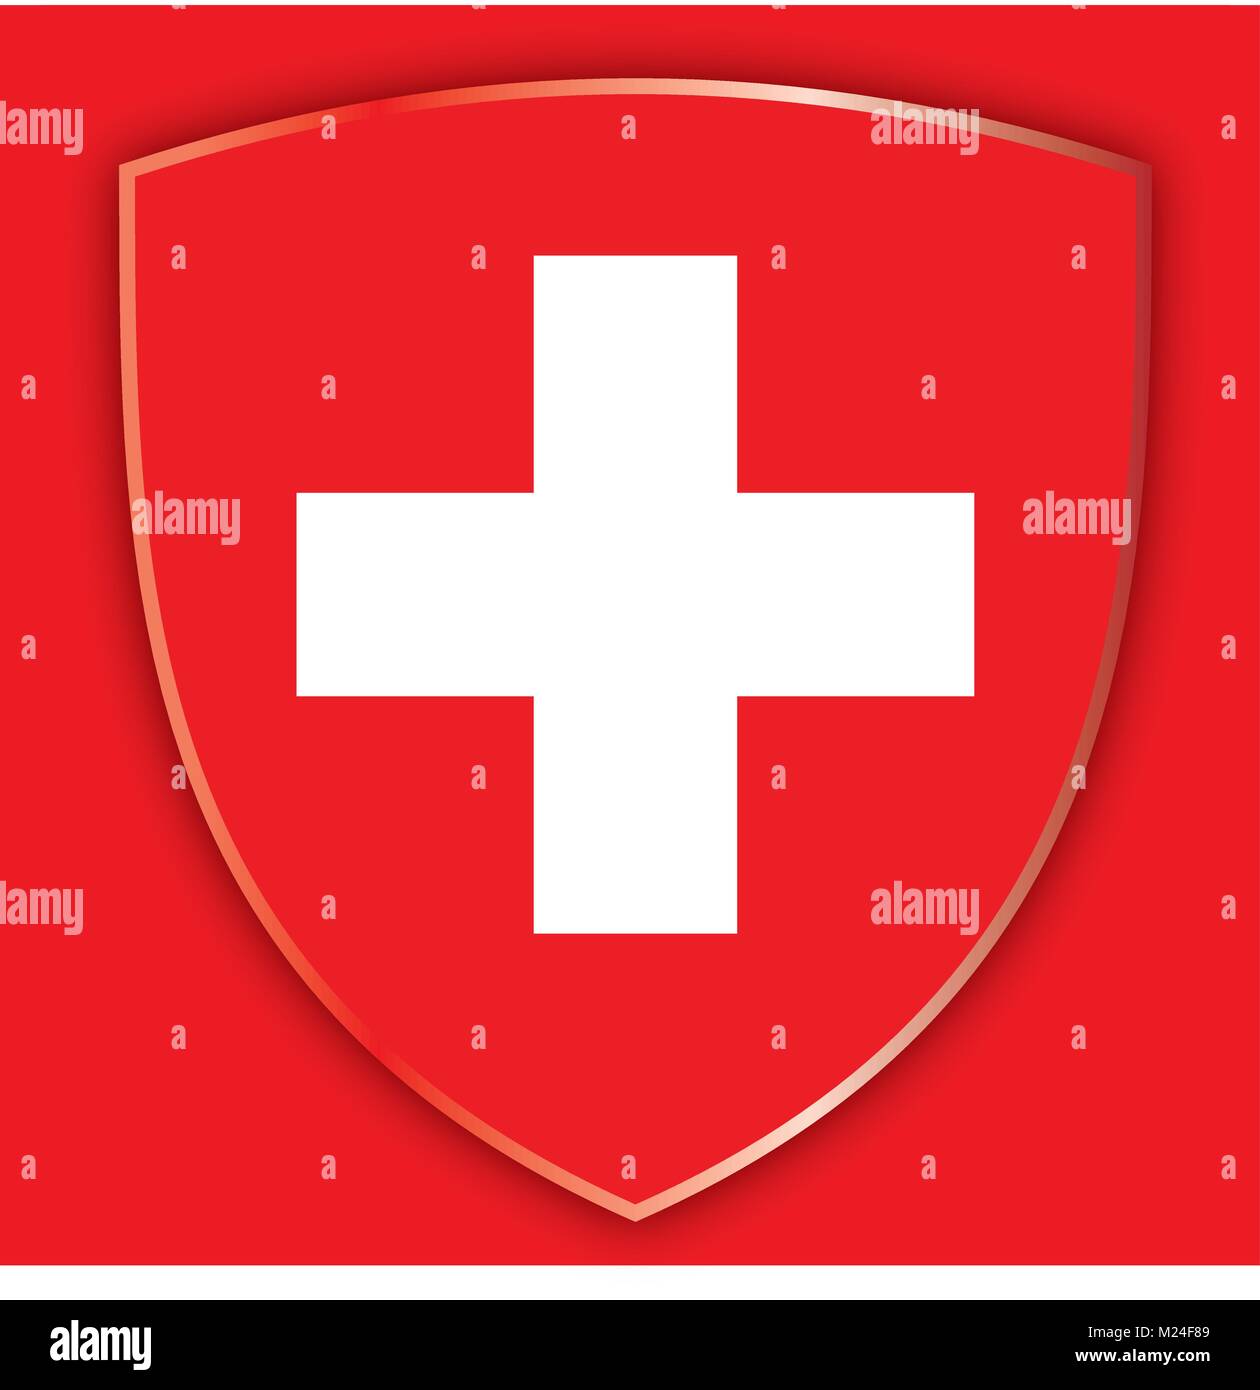 La Suisse armoiries et drapeau, symboles officiels du pays Illustration de Vecteur